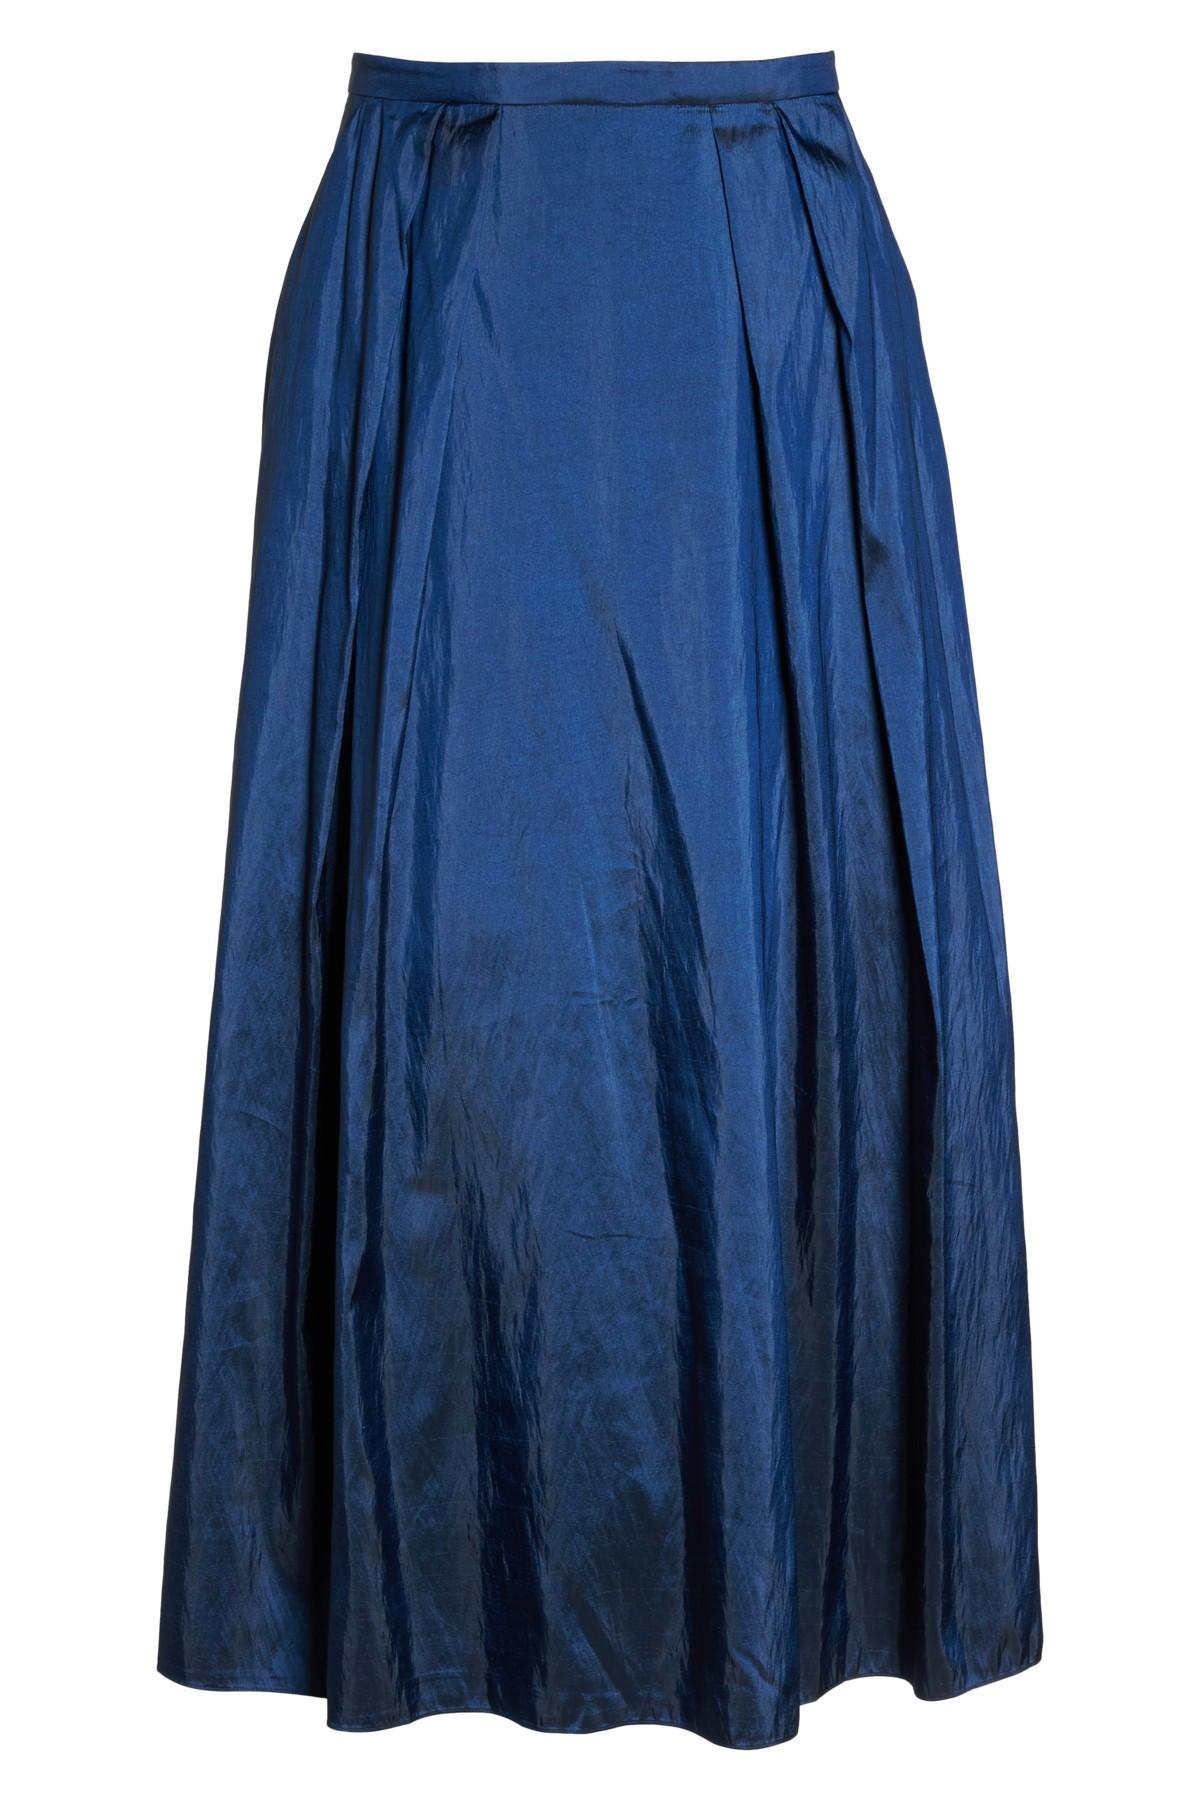 Alex Evenings Taffeta Ballgown Skirt in Navy (Blue) - Lyst